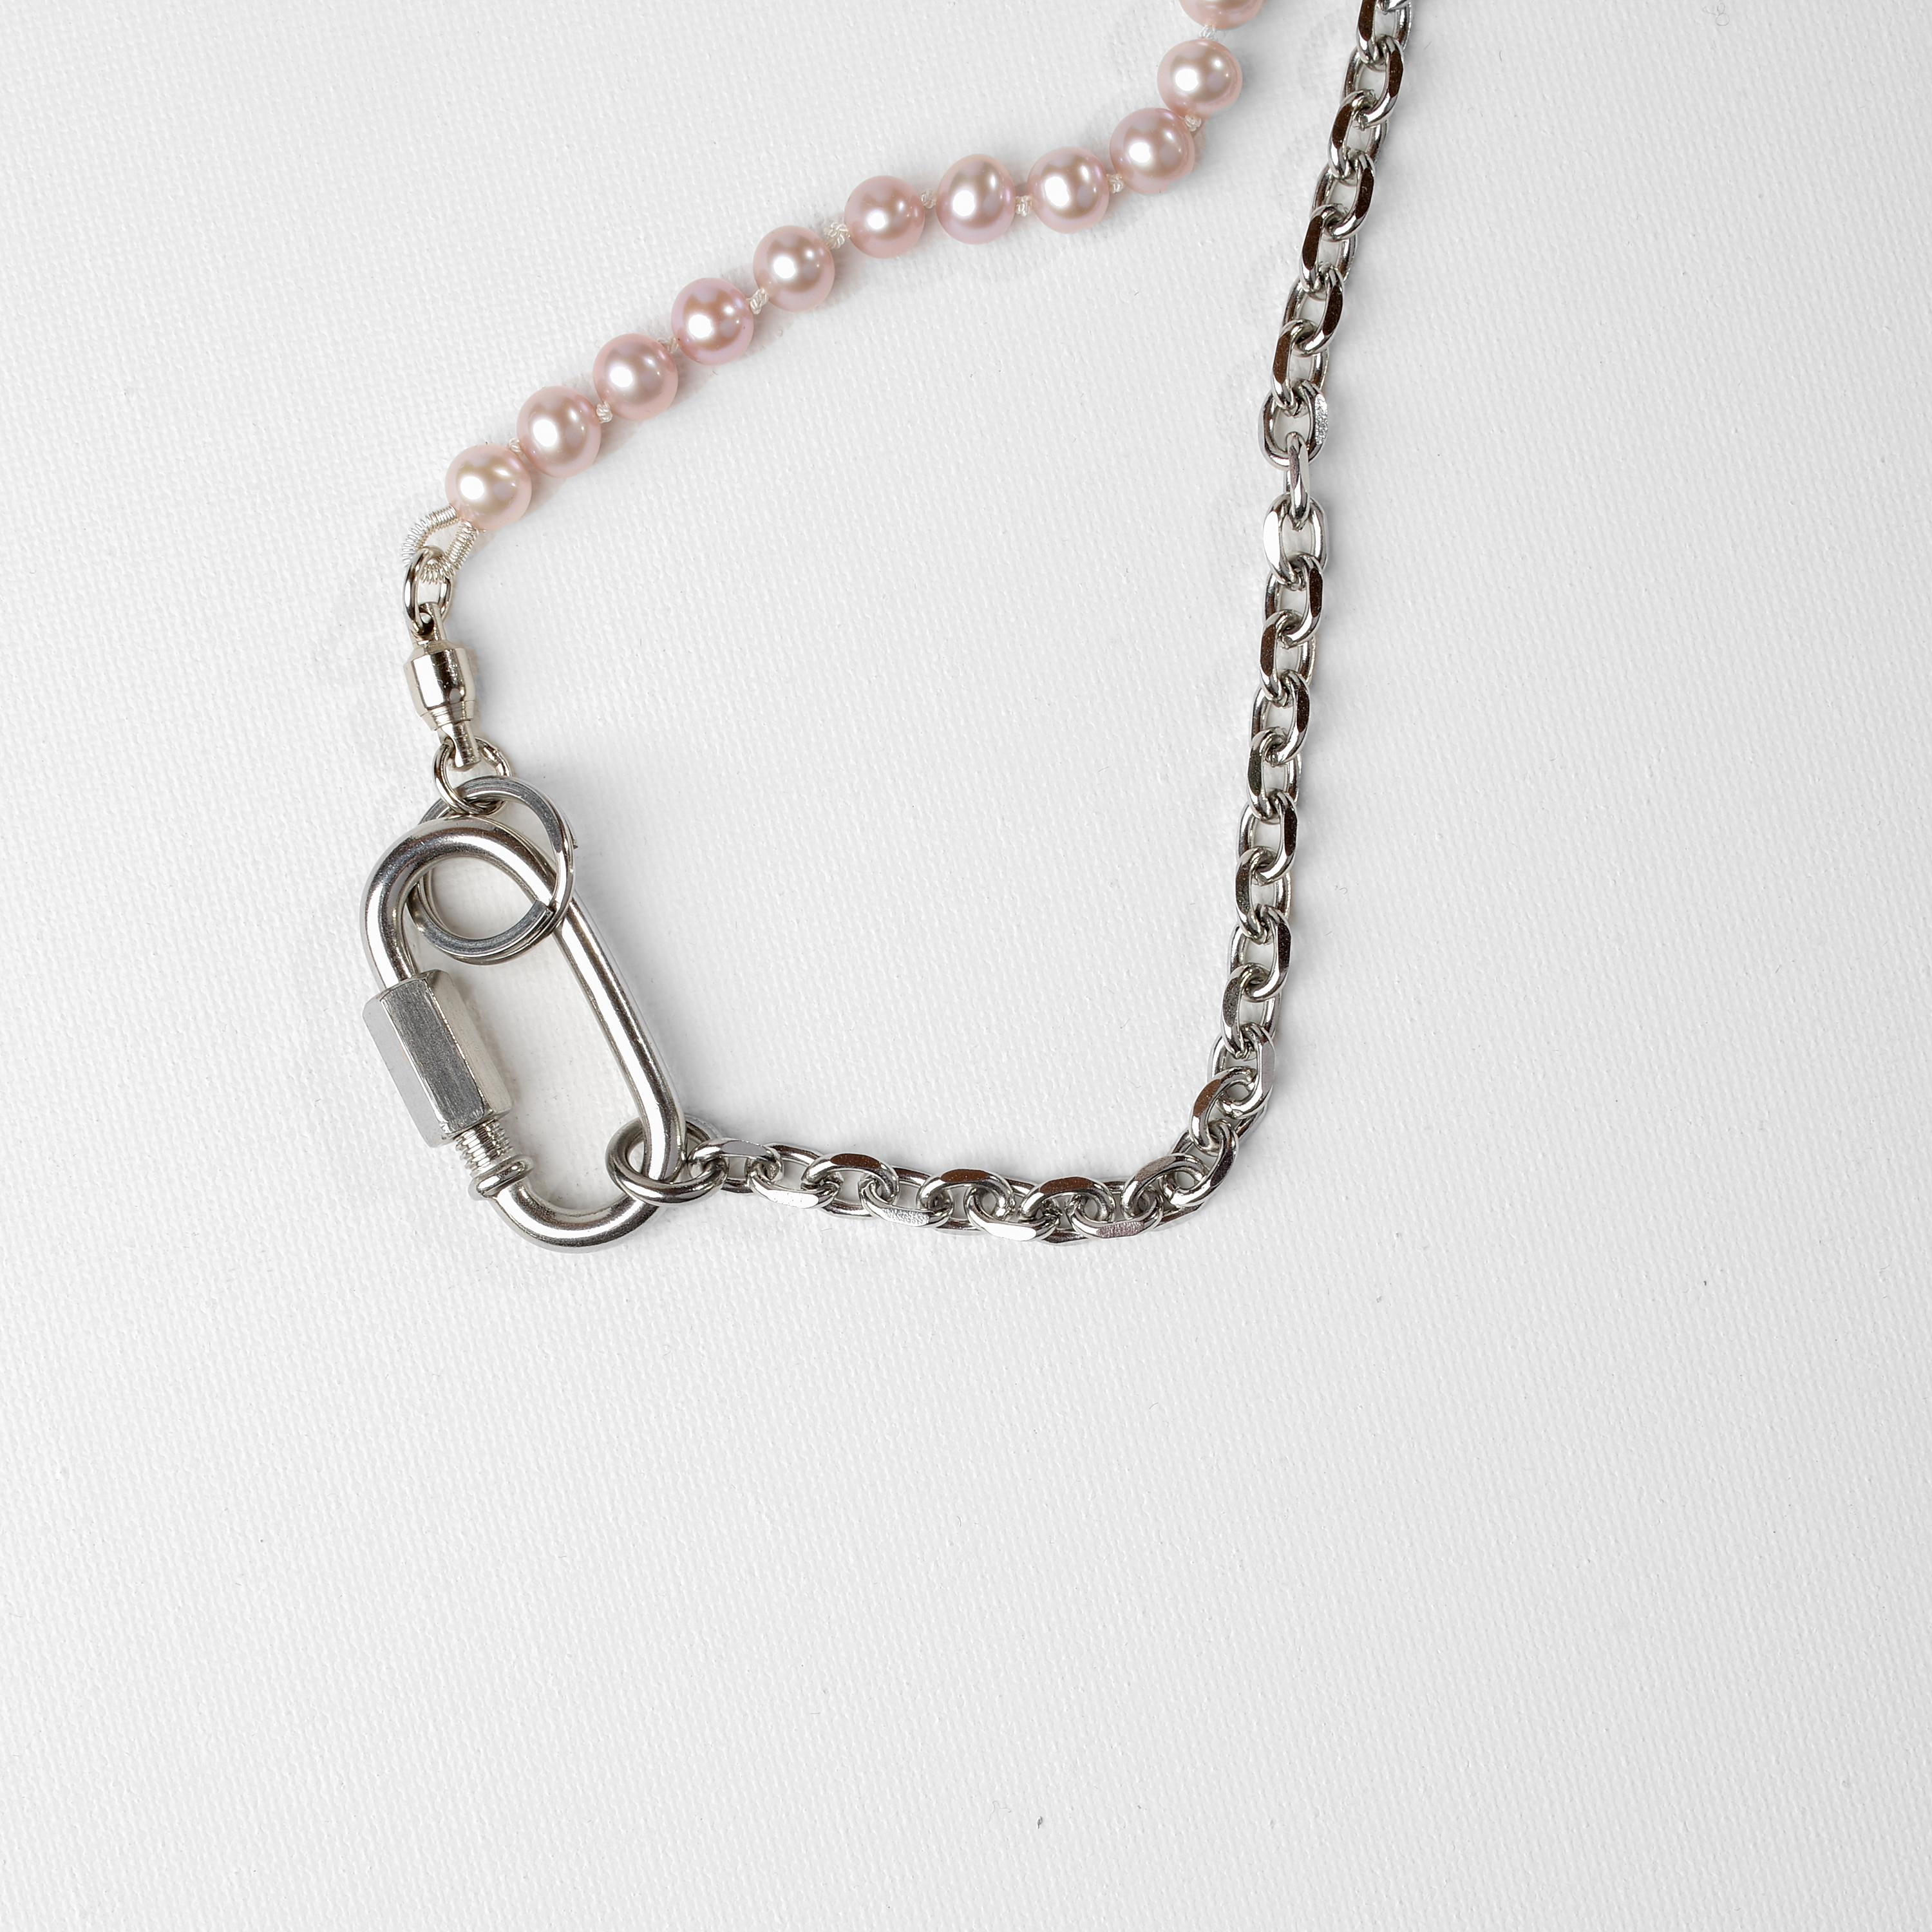 Diese einzigartige Halskette wurde von PEARL/SAW kreiert, dem Hersteller von 